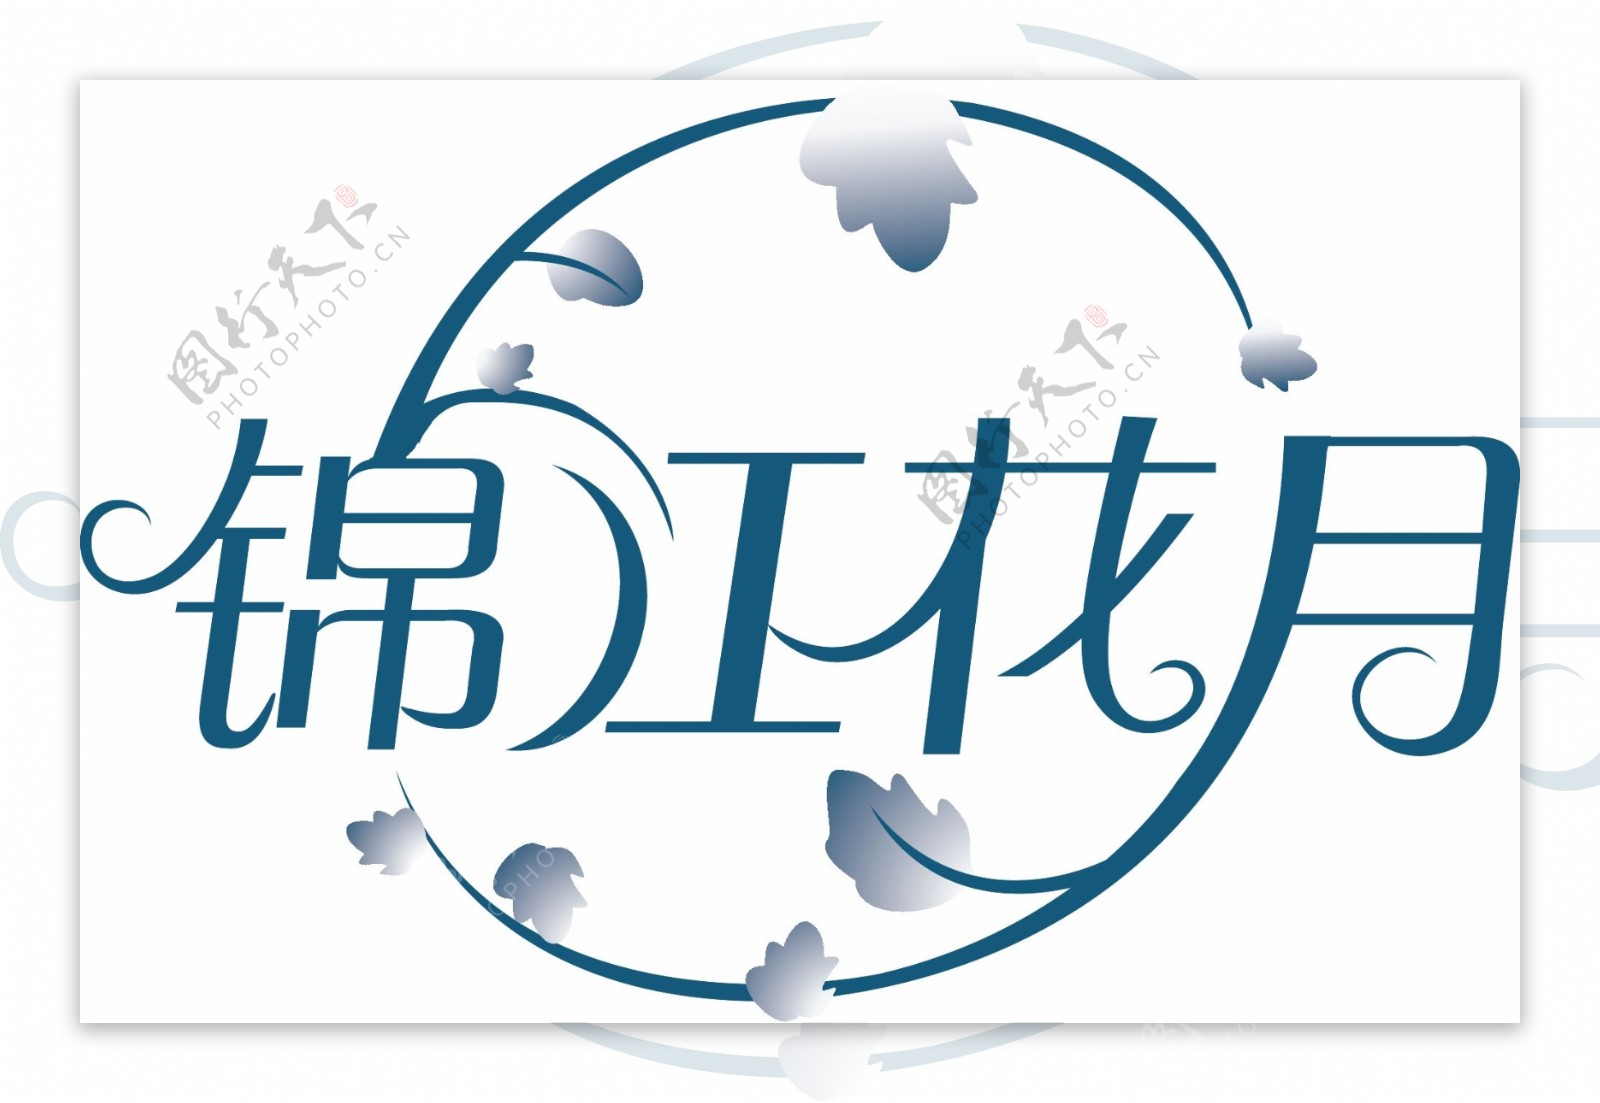 锦江花月字体设计